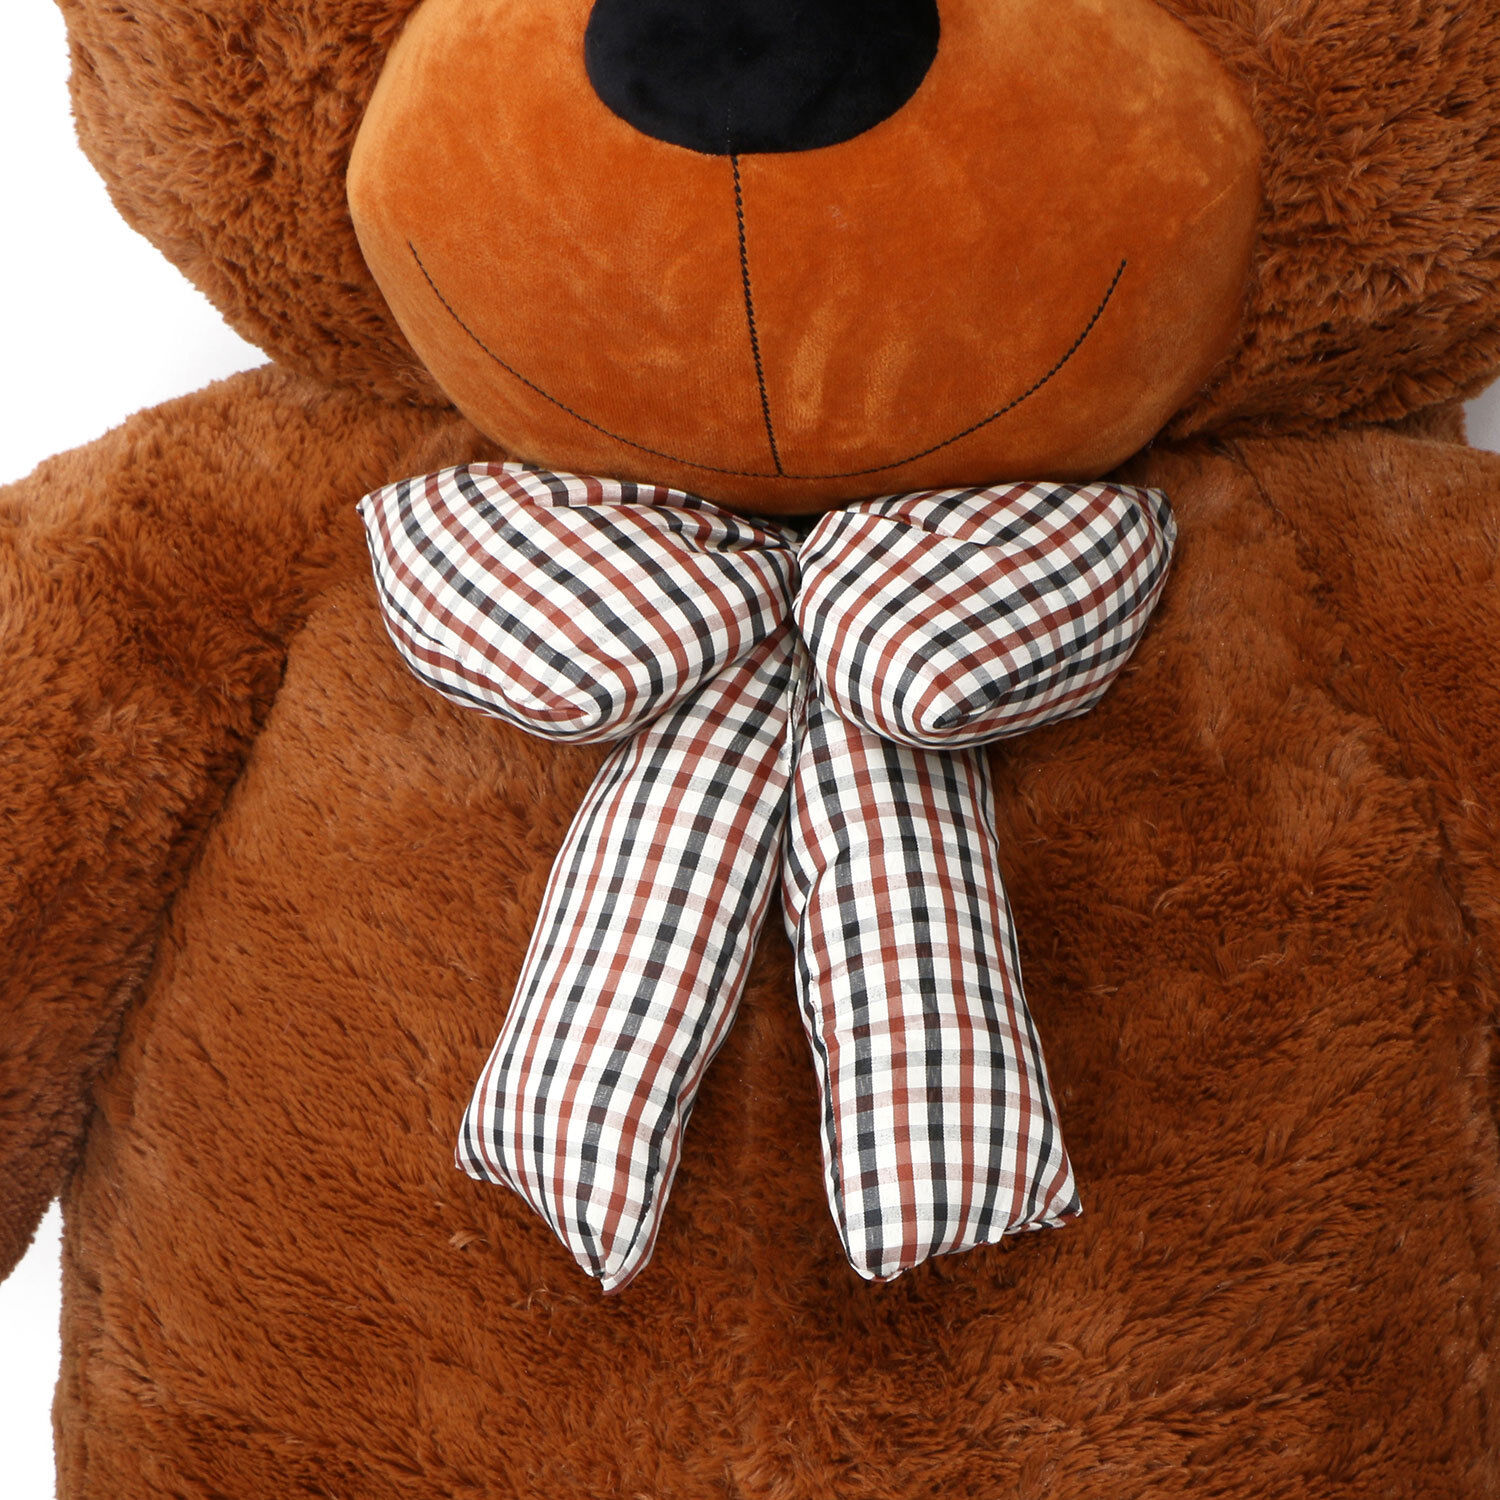 Joyfay 91in 230cm Giant Teddy Bear Plush Toy Birthday Valentine Gift Joyfay JFTOY00061 - фотография #7